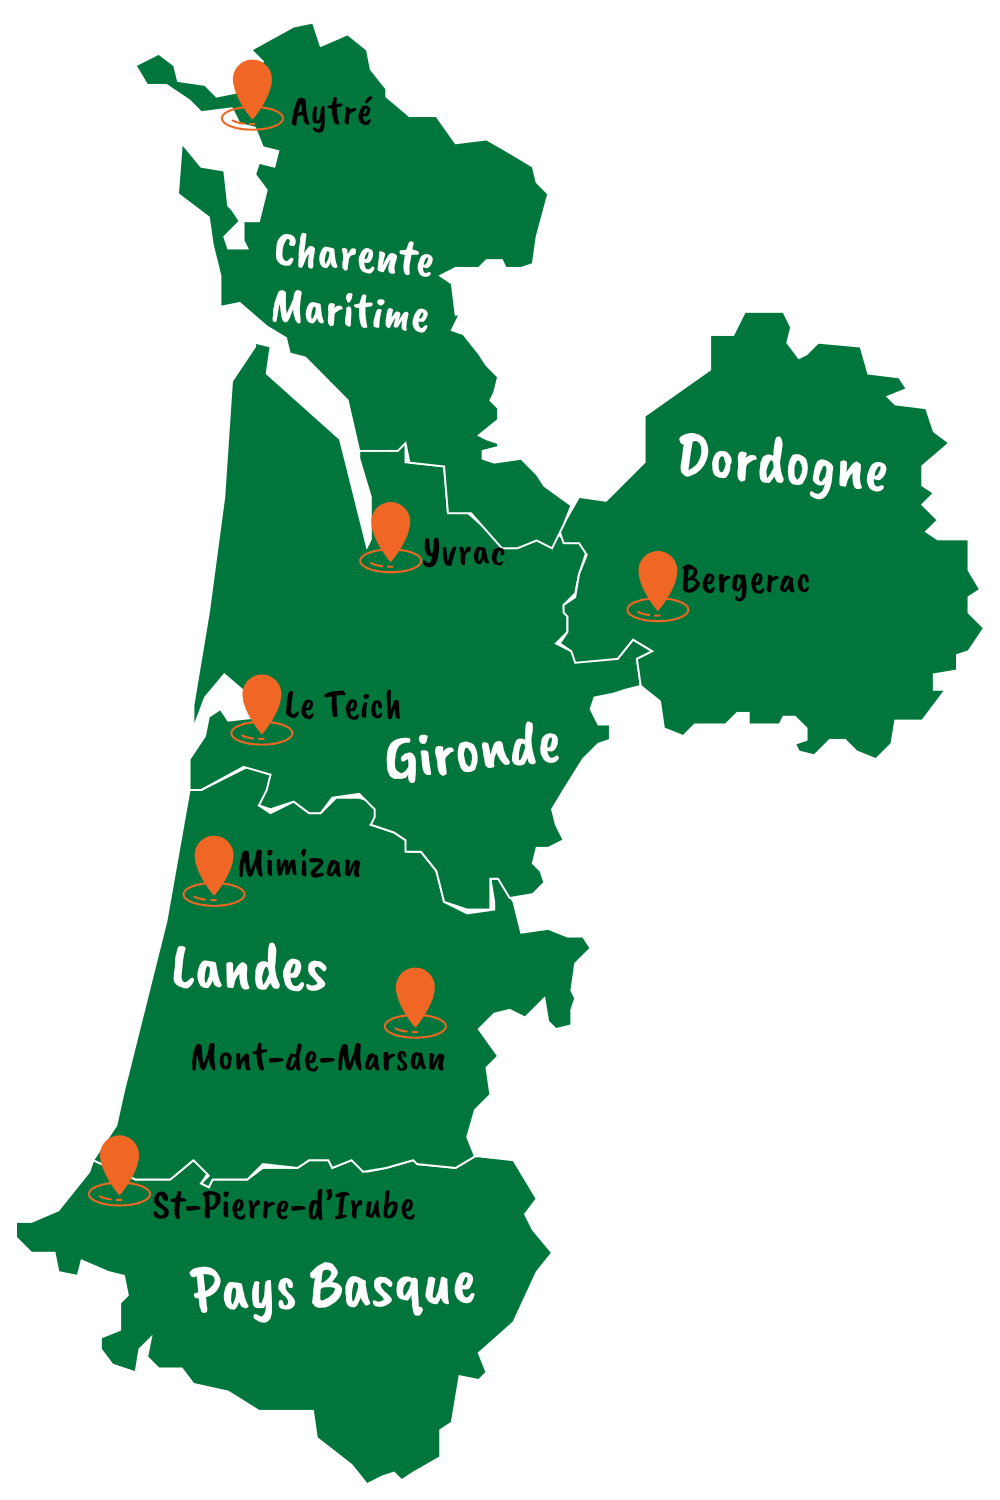 Carte des agences isoface en Gironde, Landes, Pays Basque, Dordogne et Charente-Maritime